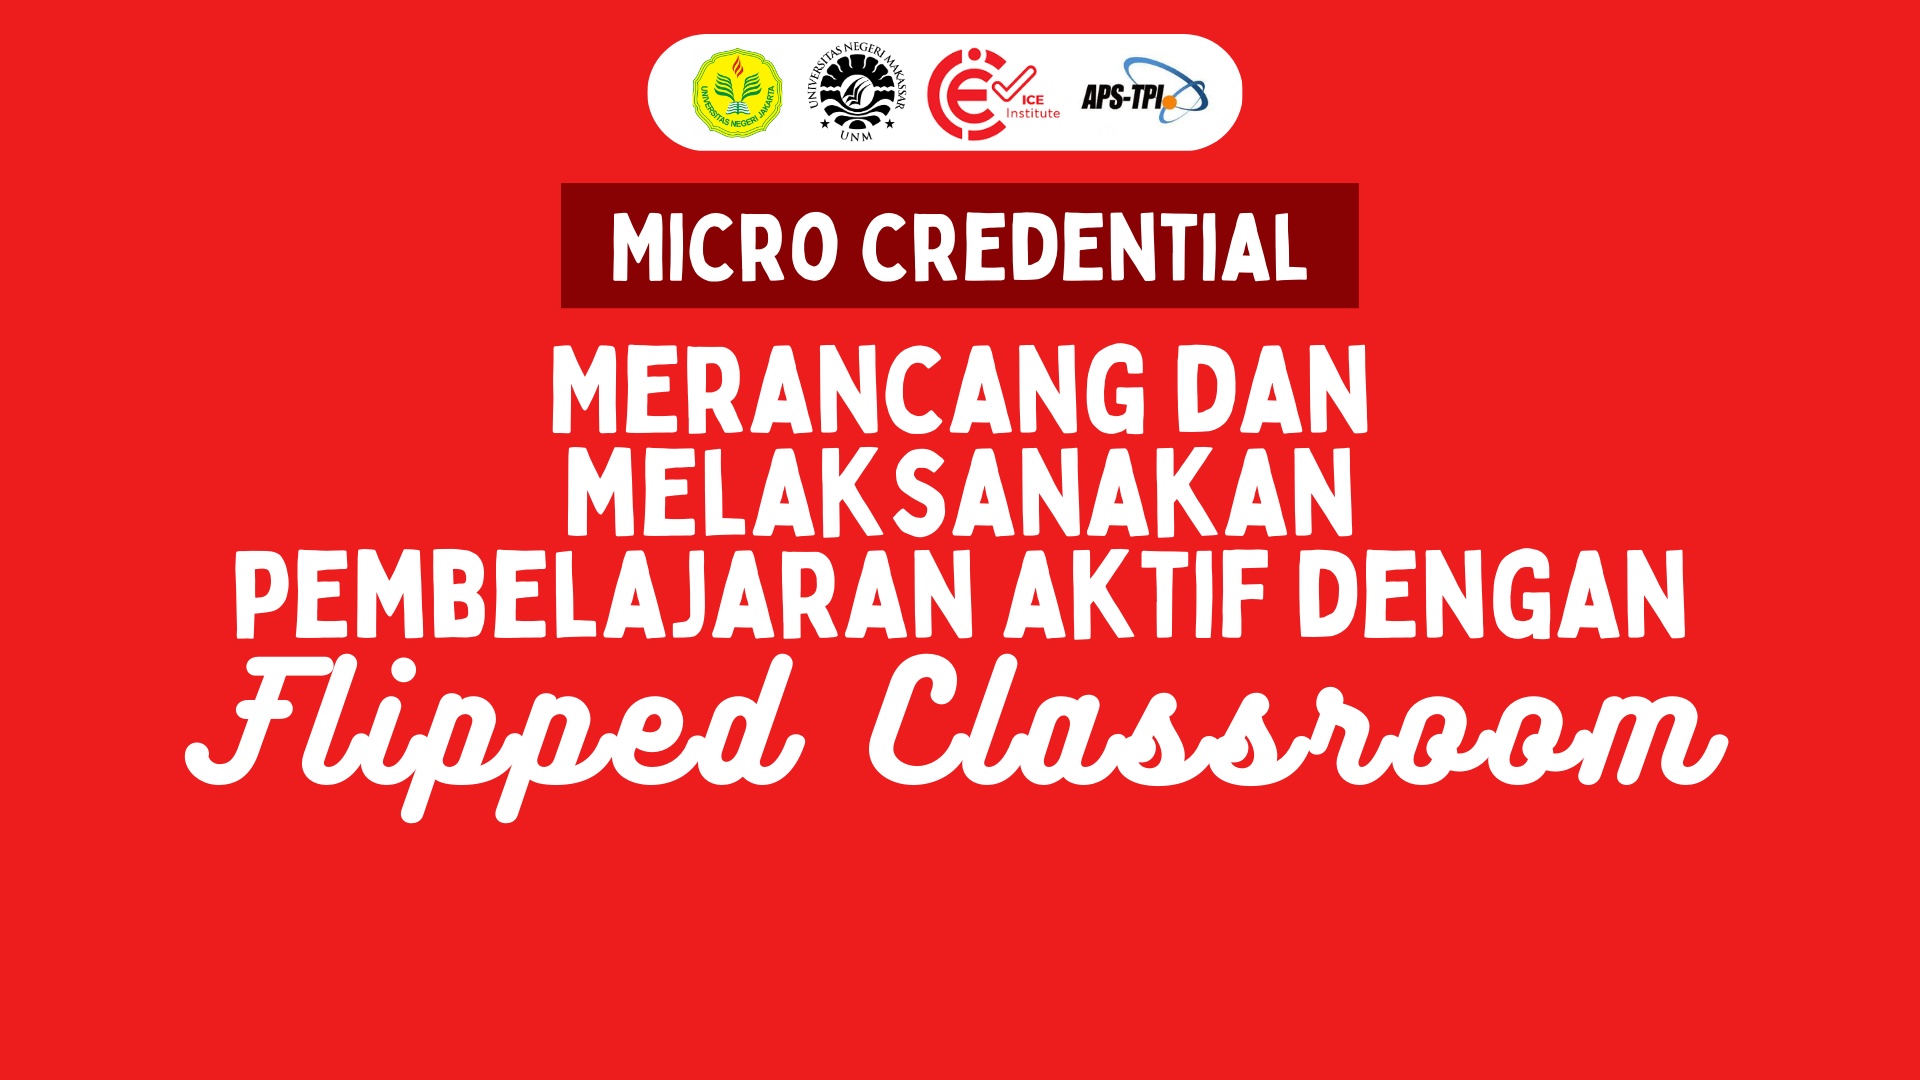 Merancang dan Melaksanakan Pembelajaran Aktif dengan Flipped Classroom  FC010223